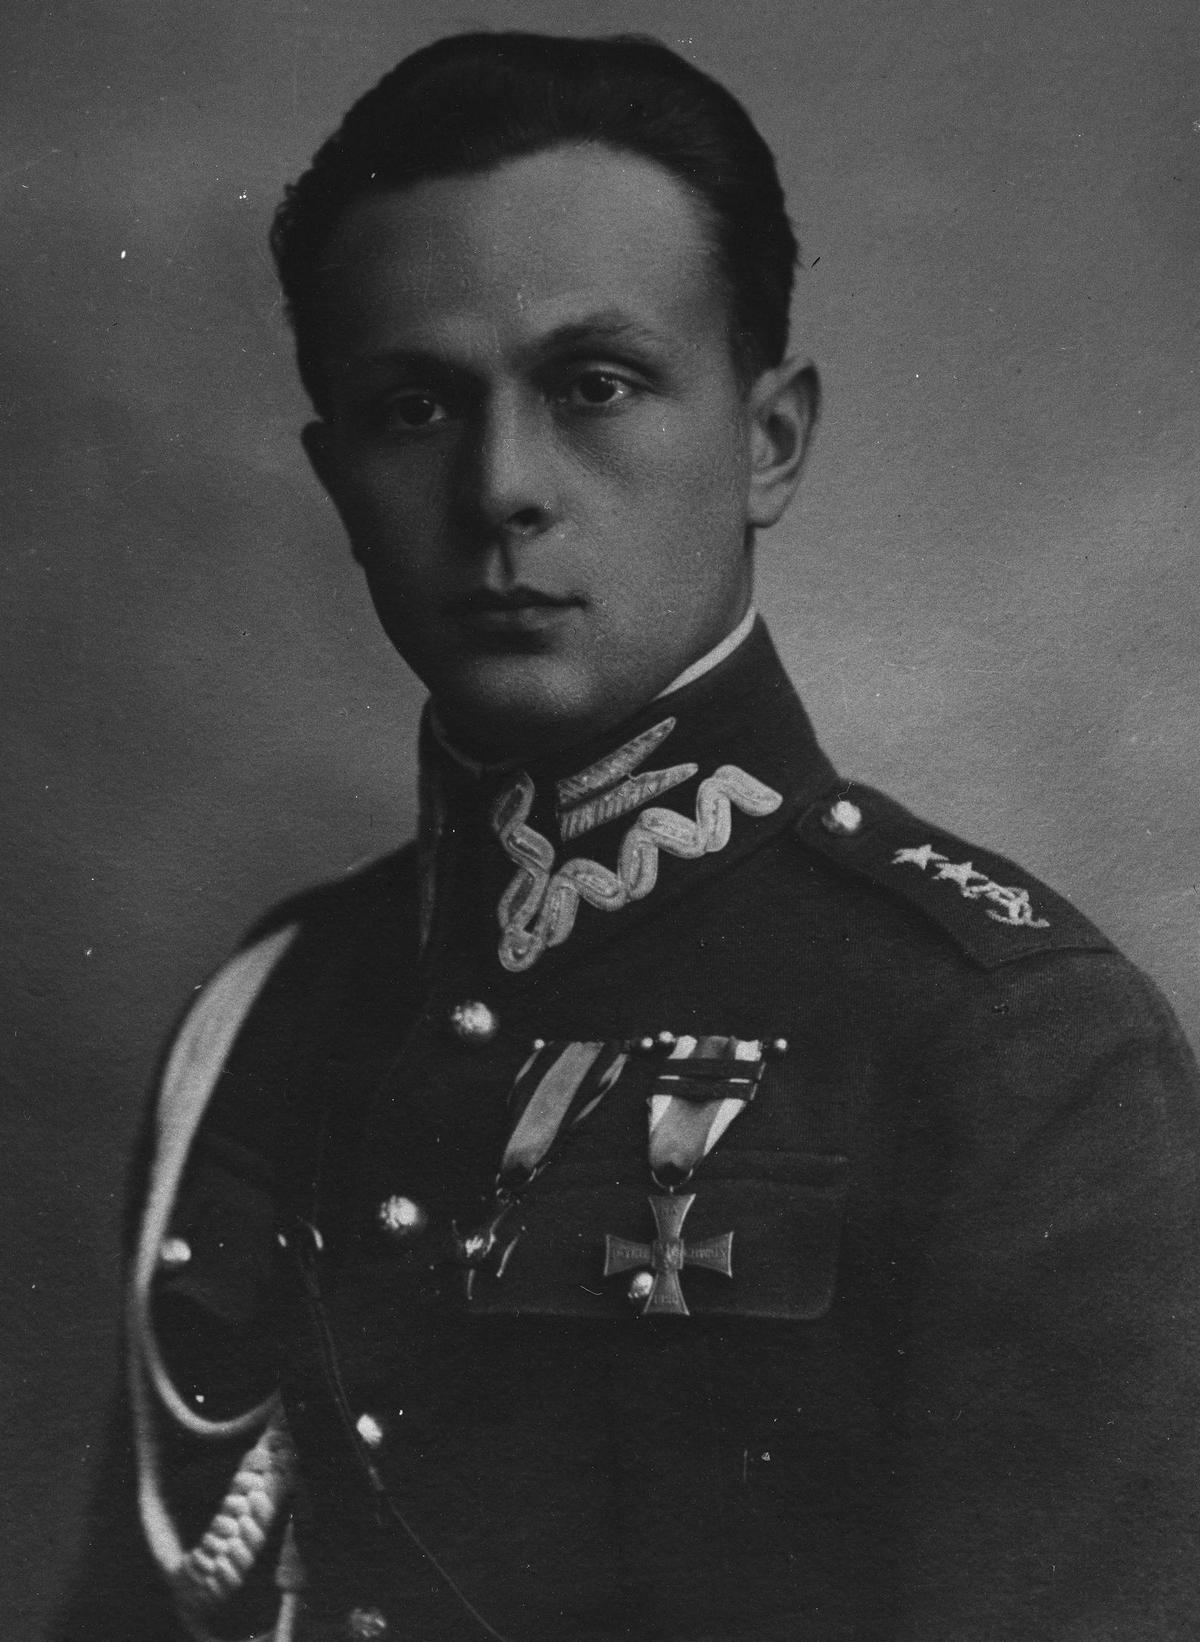 Adiutant marszałka Józefa Piłsudskiego rotmistrz Aleksander Hrynkiewicz.